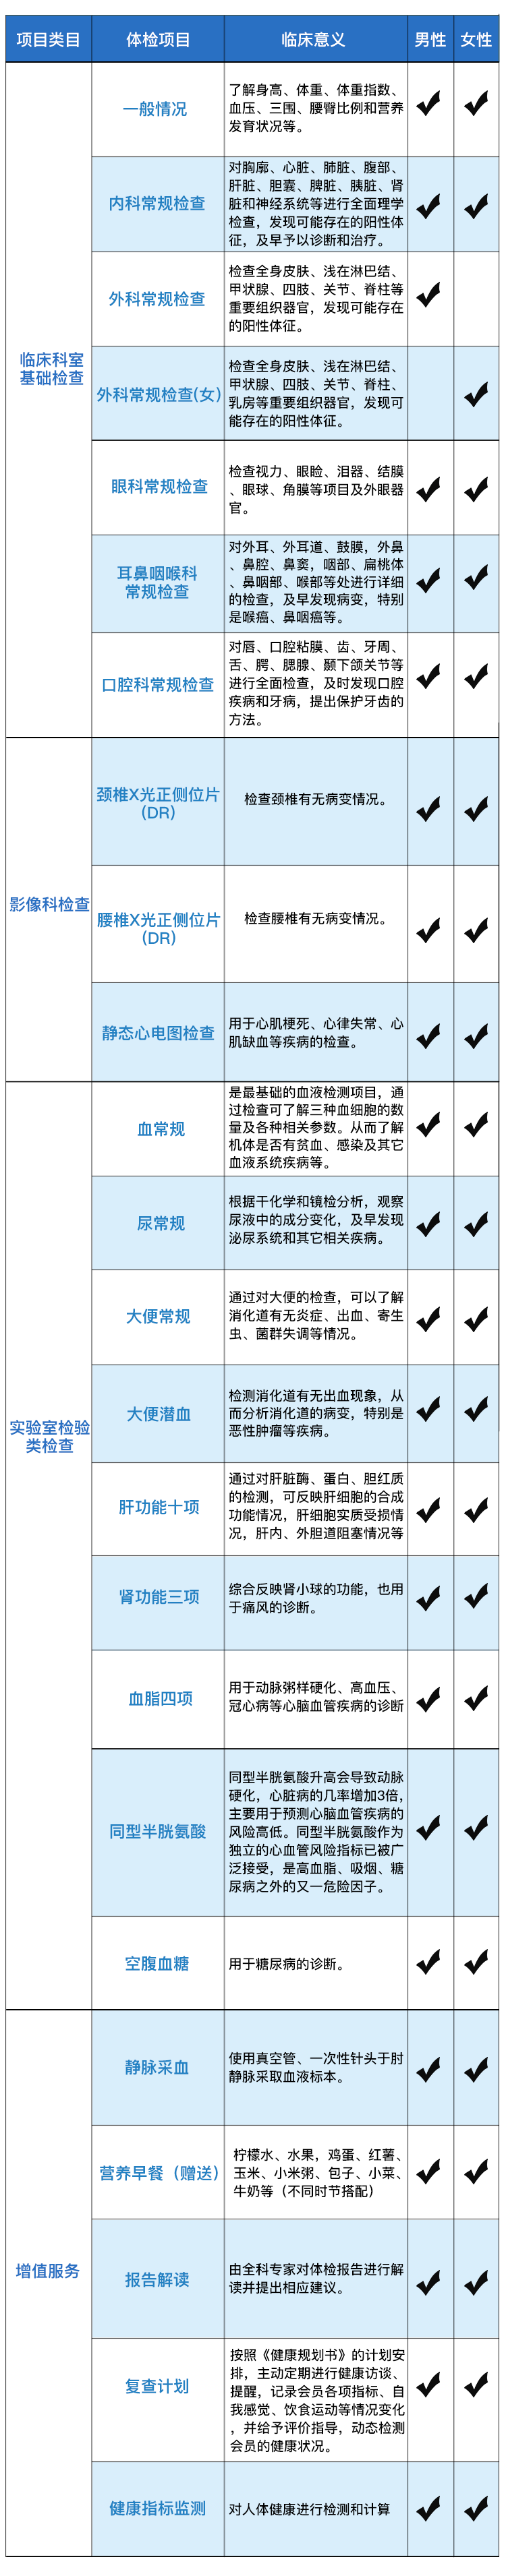 亚亚傅app官网久坐族体检套餐(1).png